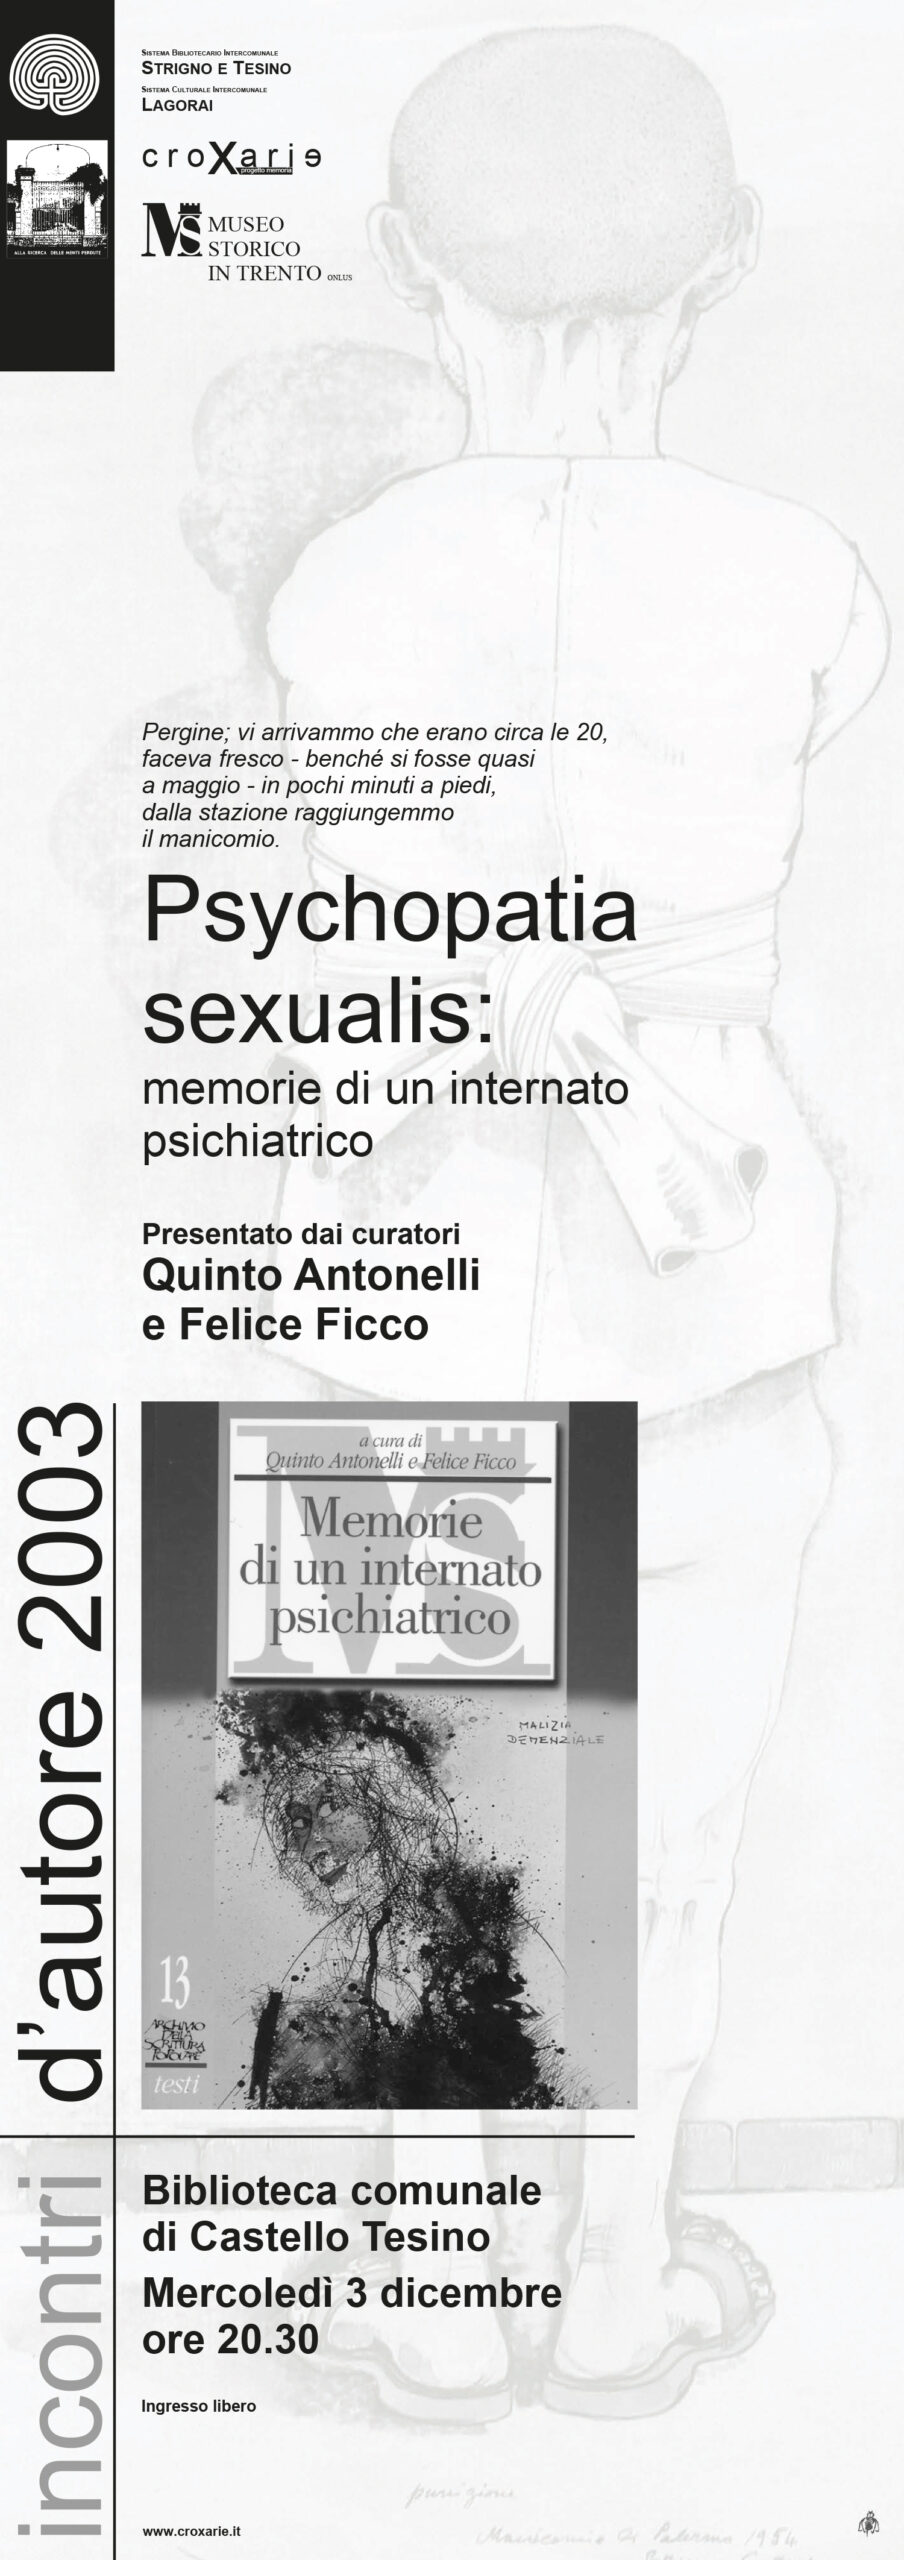 Psychopatia sexualis: memorie di un internato psichiatrico